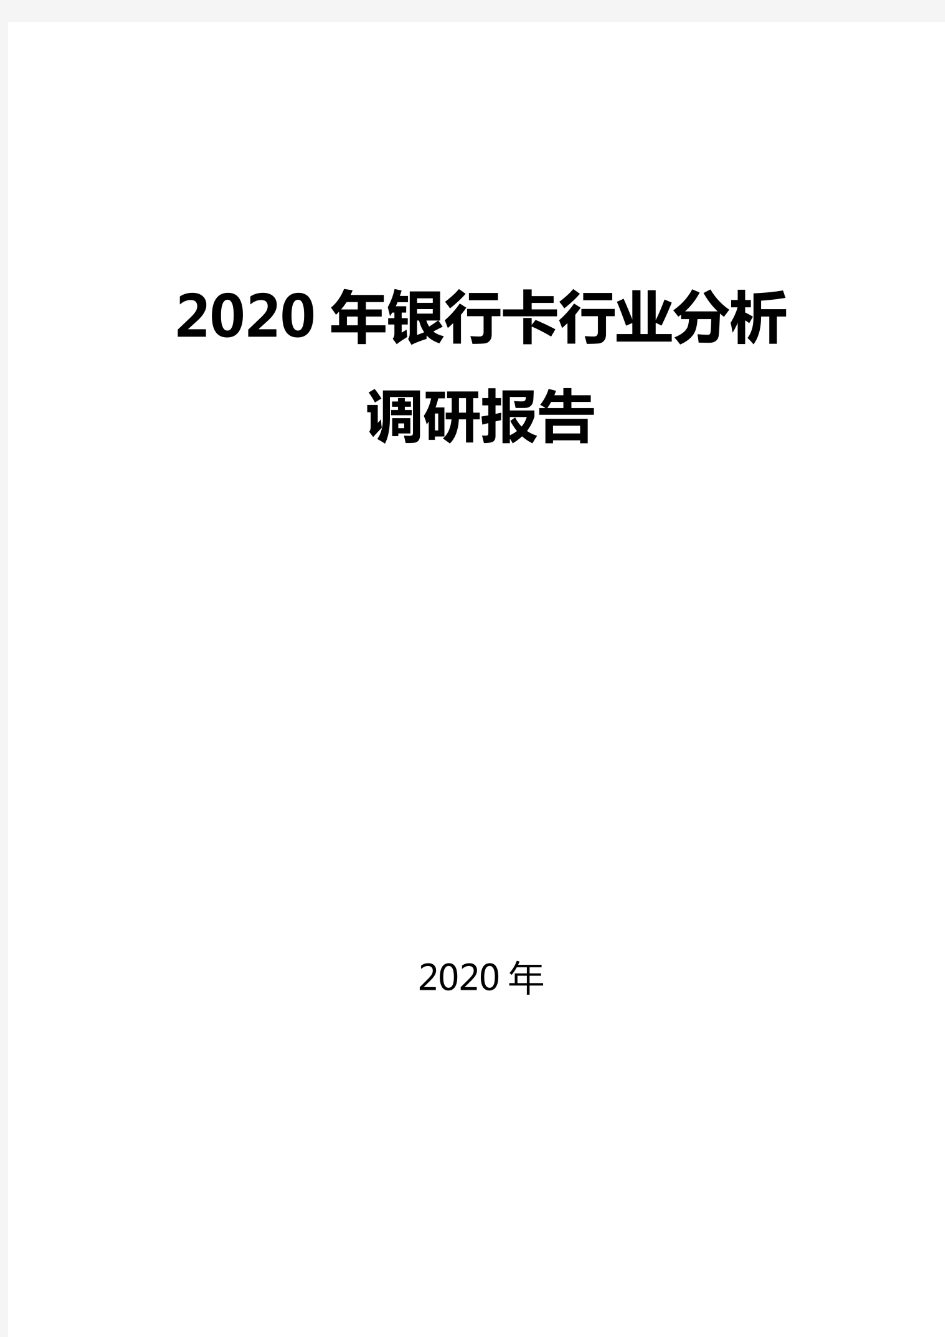 2020银行卡行业分析调研报告